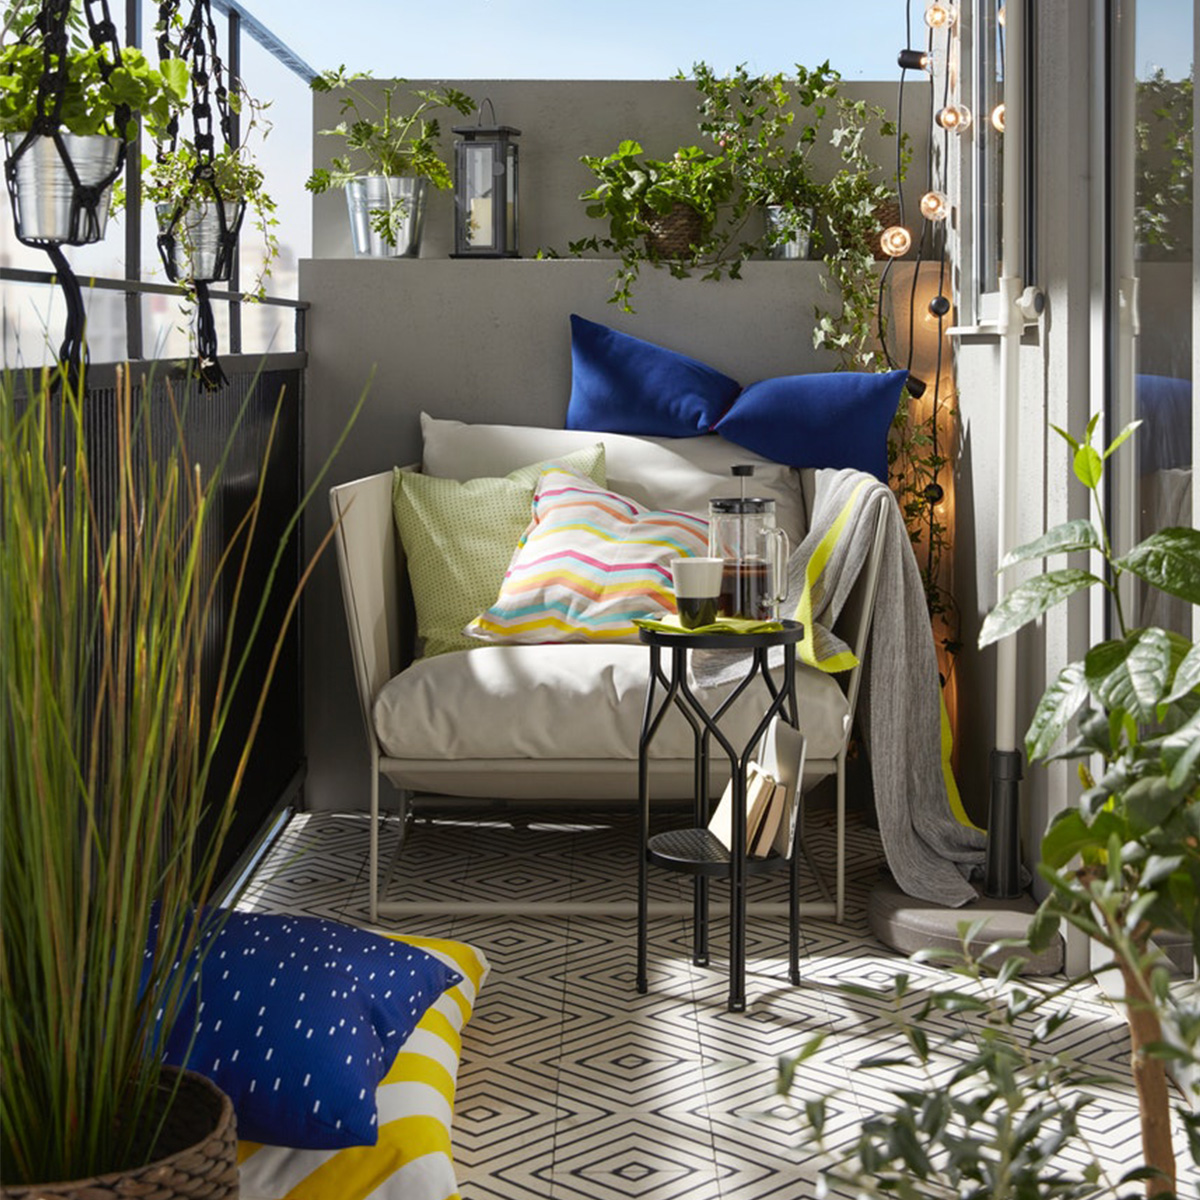 Acheter Salon De Jardin Best Of Idées Pour L Aménagement Du Jardin Ikea